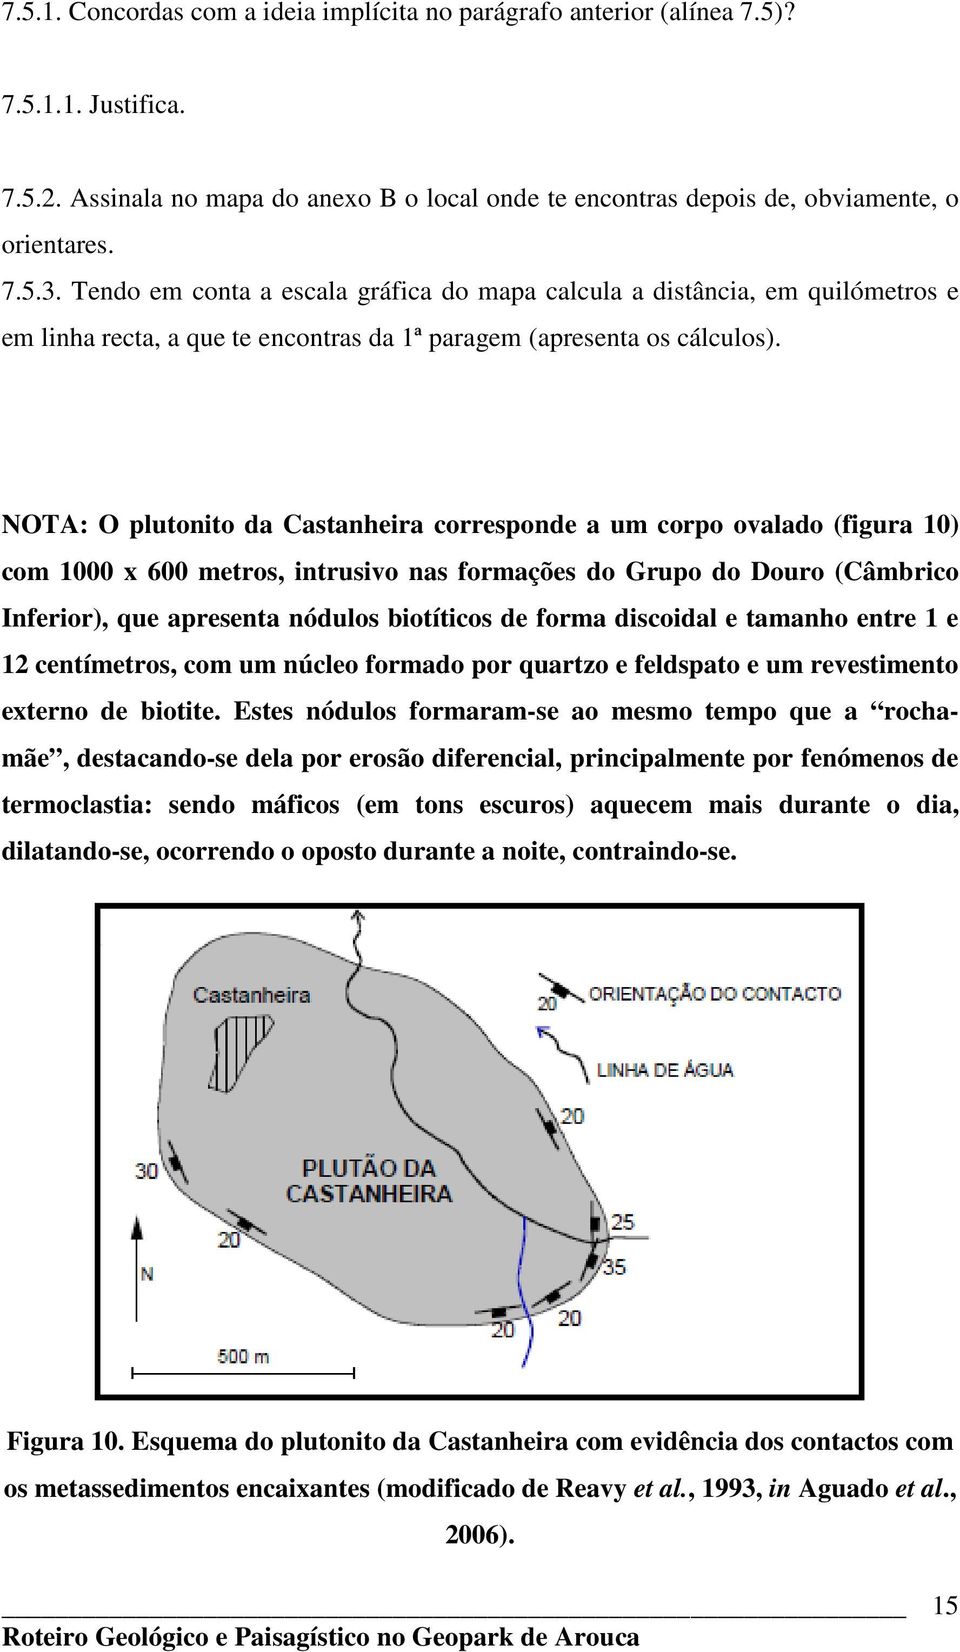 NOTA: O plutonito da Castanheira corresponde a um corpo ovalado (figura 10) com 1000 x 600 metros, intrusivo nas formações do Grupo do Douro (Câmbrico Inferior), que apresenta nódulos biotíticos de